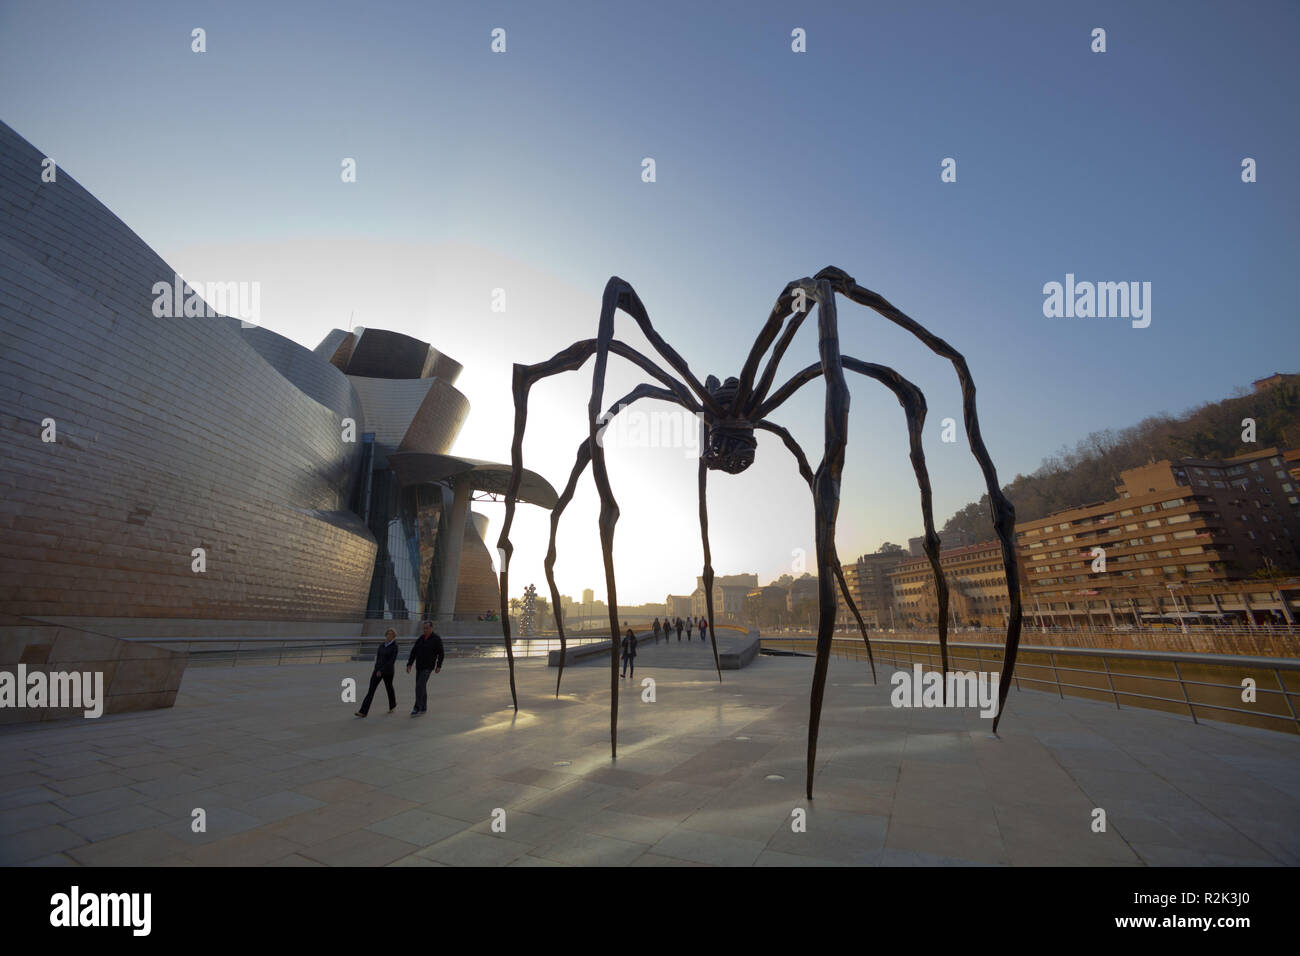 Spanien, Baskenland, Bilbao, Guggenheim-museum, dem Architekten Frank O. Gehry, Kunstwerk, Spider 'maman', Stockfoto